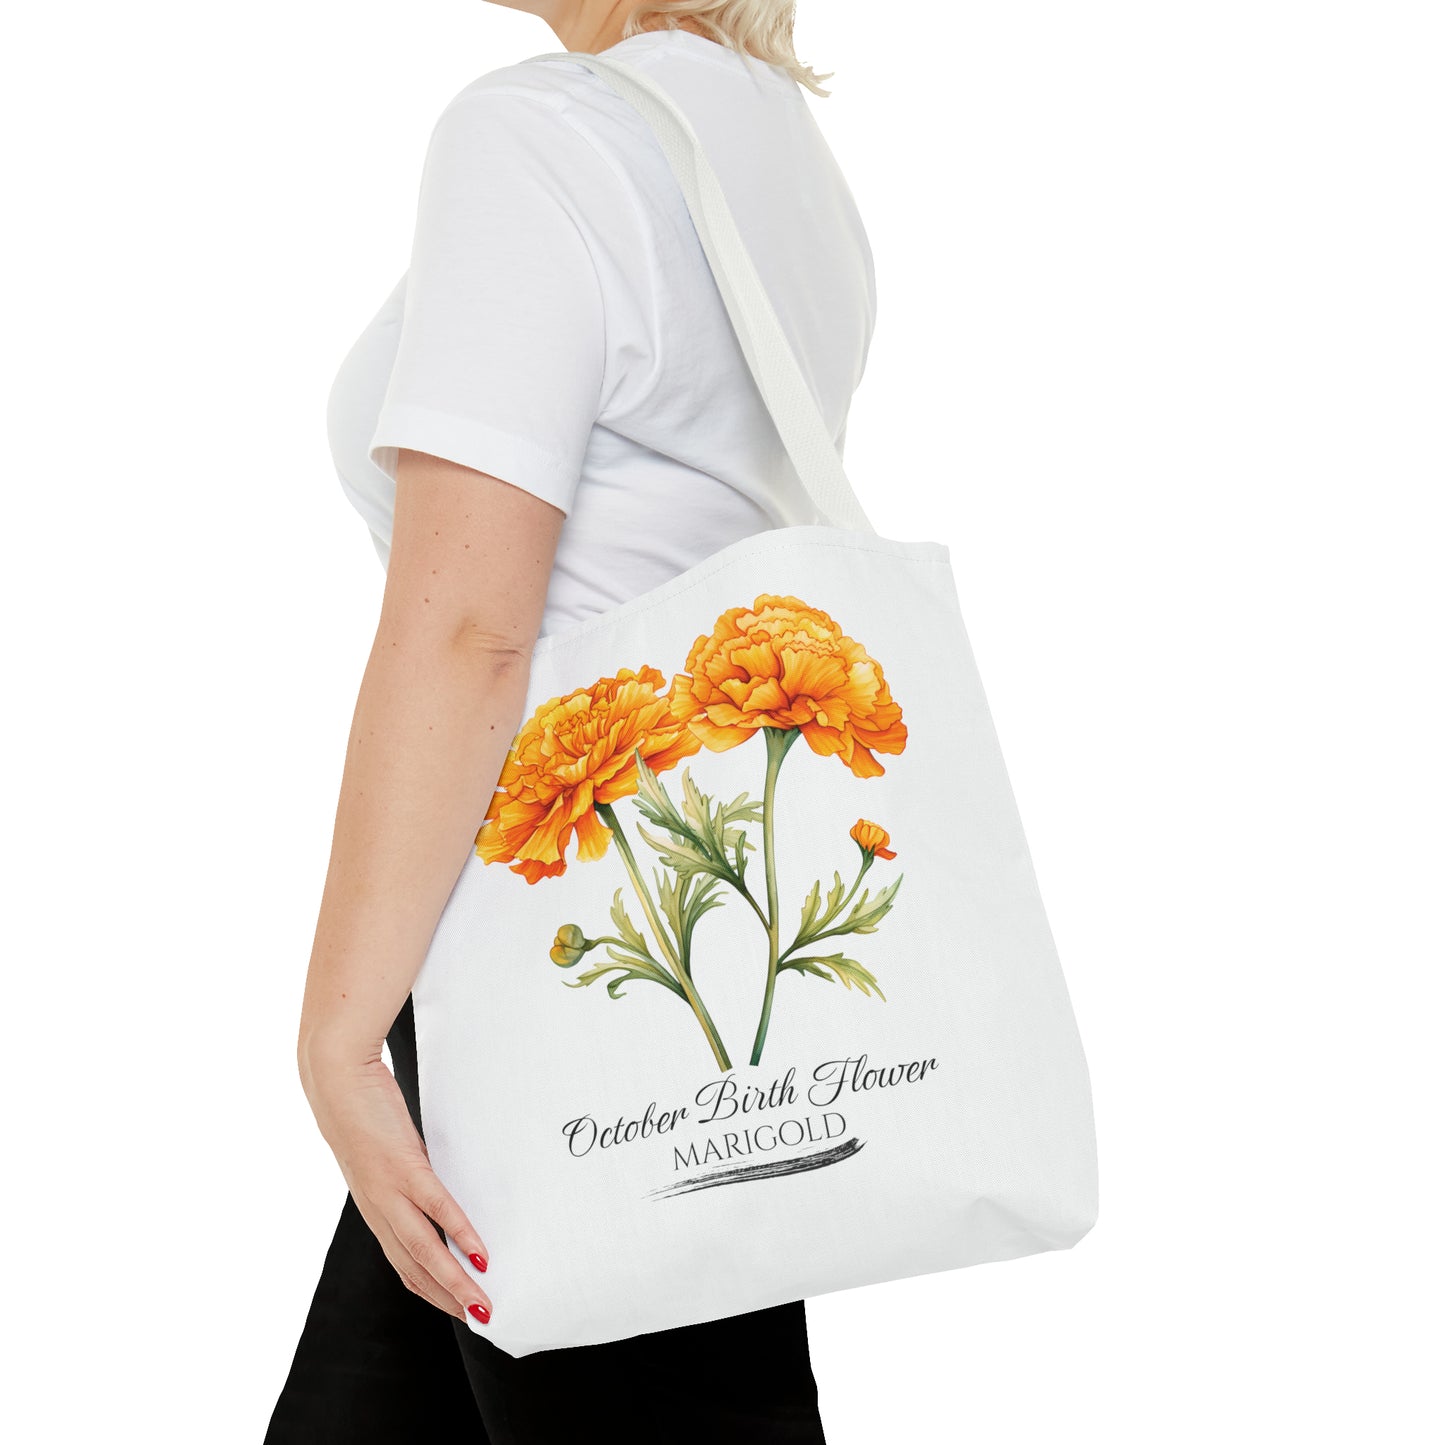 October Birth Flower: Marigold - Tote Bag (AOP)